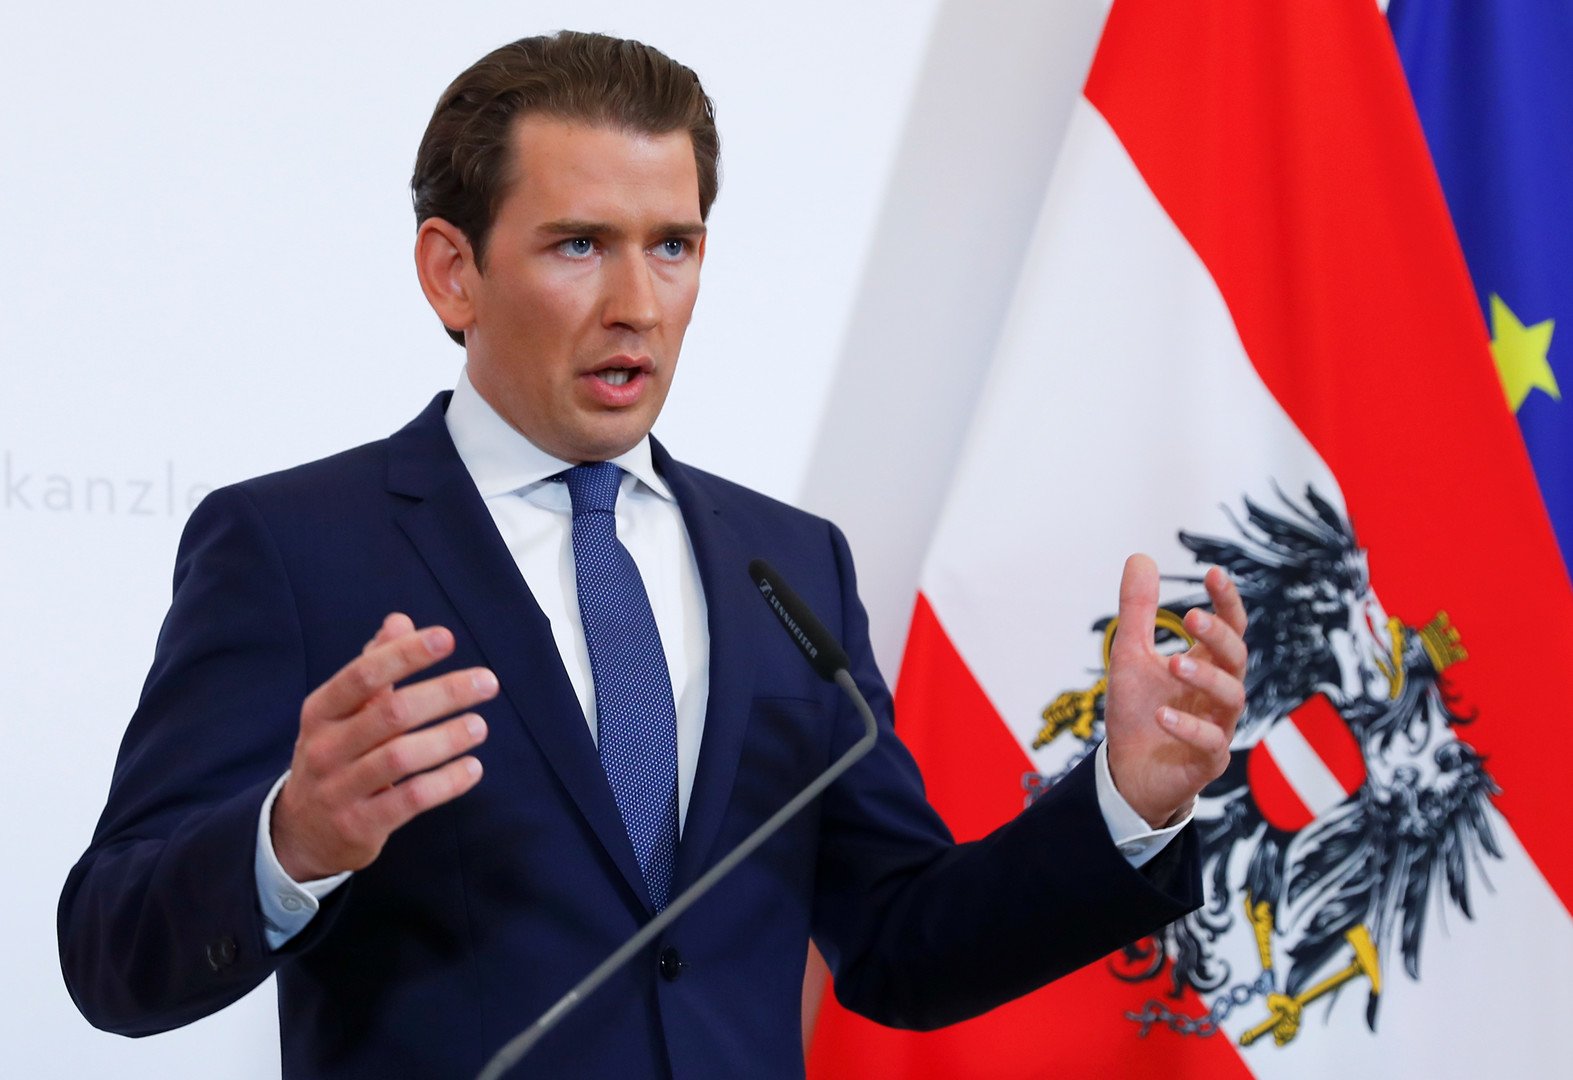 مستشار النمسا يعلن إجراء انتخابات مبكرة إثر فضيحة حول نائبه من معسكر اليمين الشعبوي